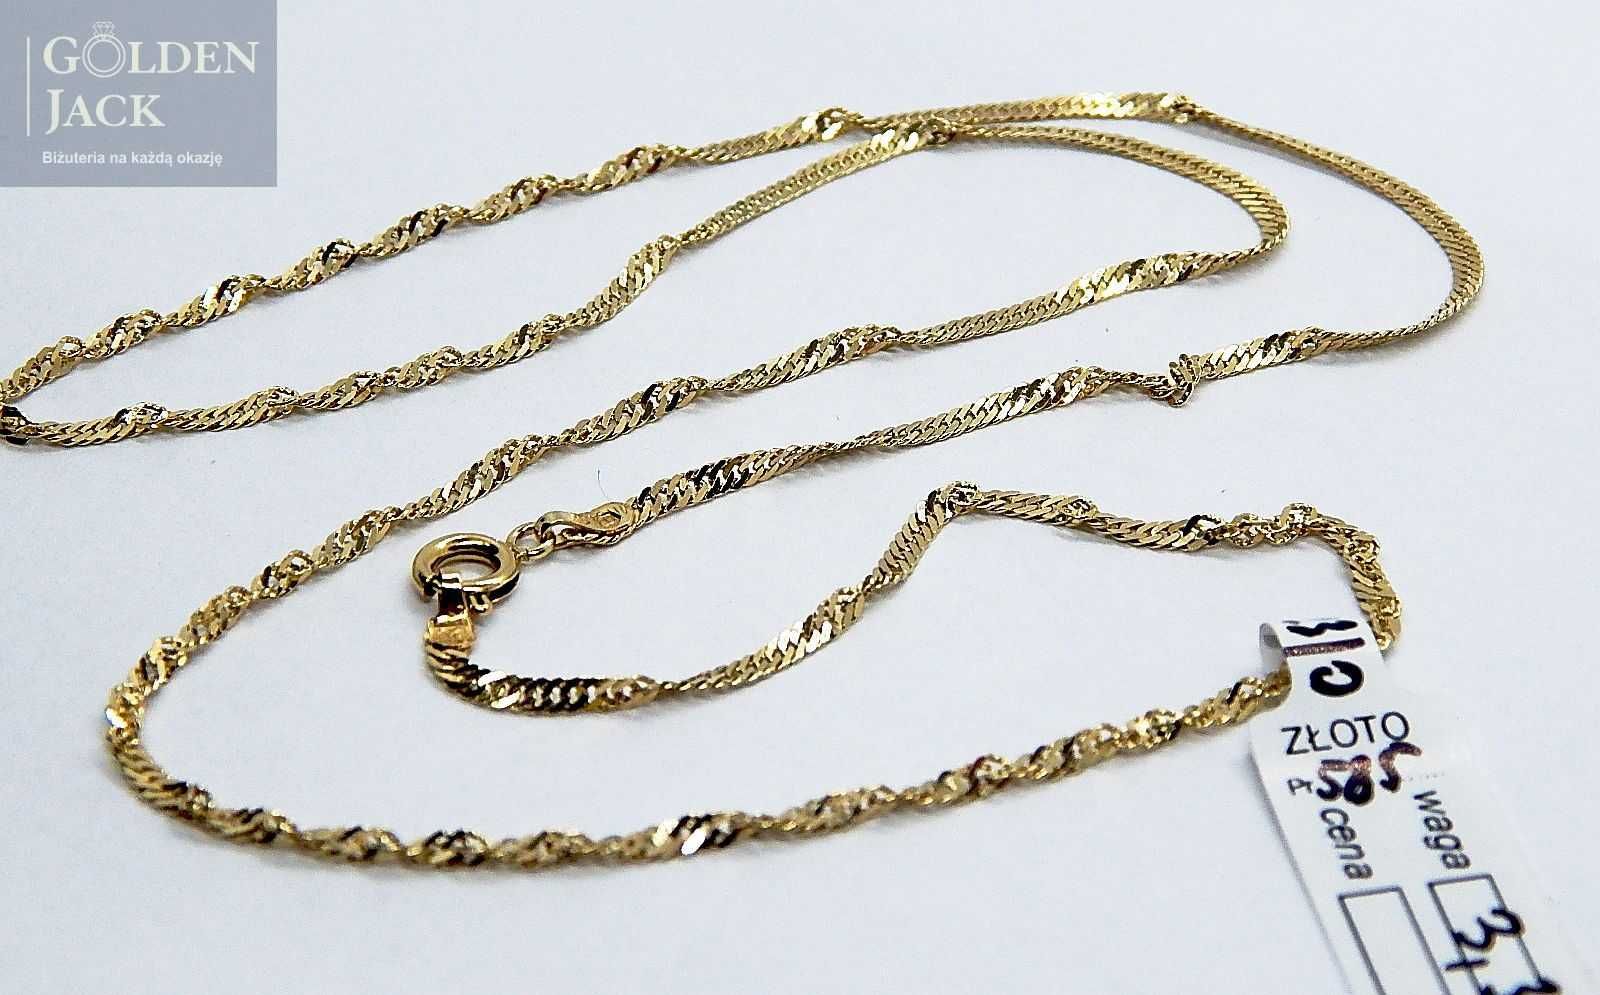 Złoty łańcuszek splot Singapur złoto pr. 585 długość 53 cm waga 3,39 g